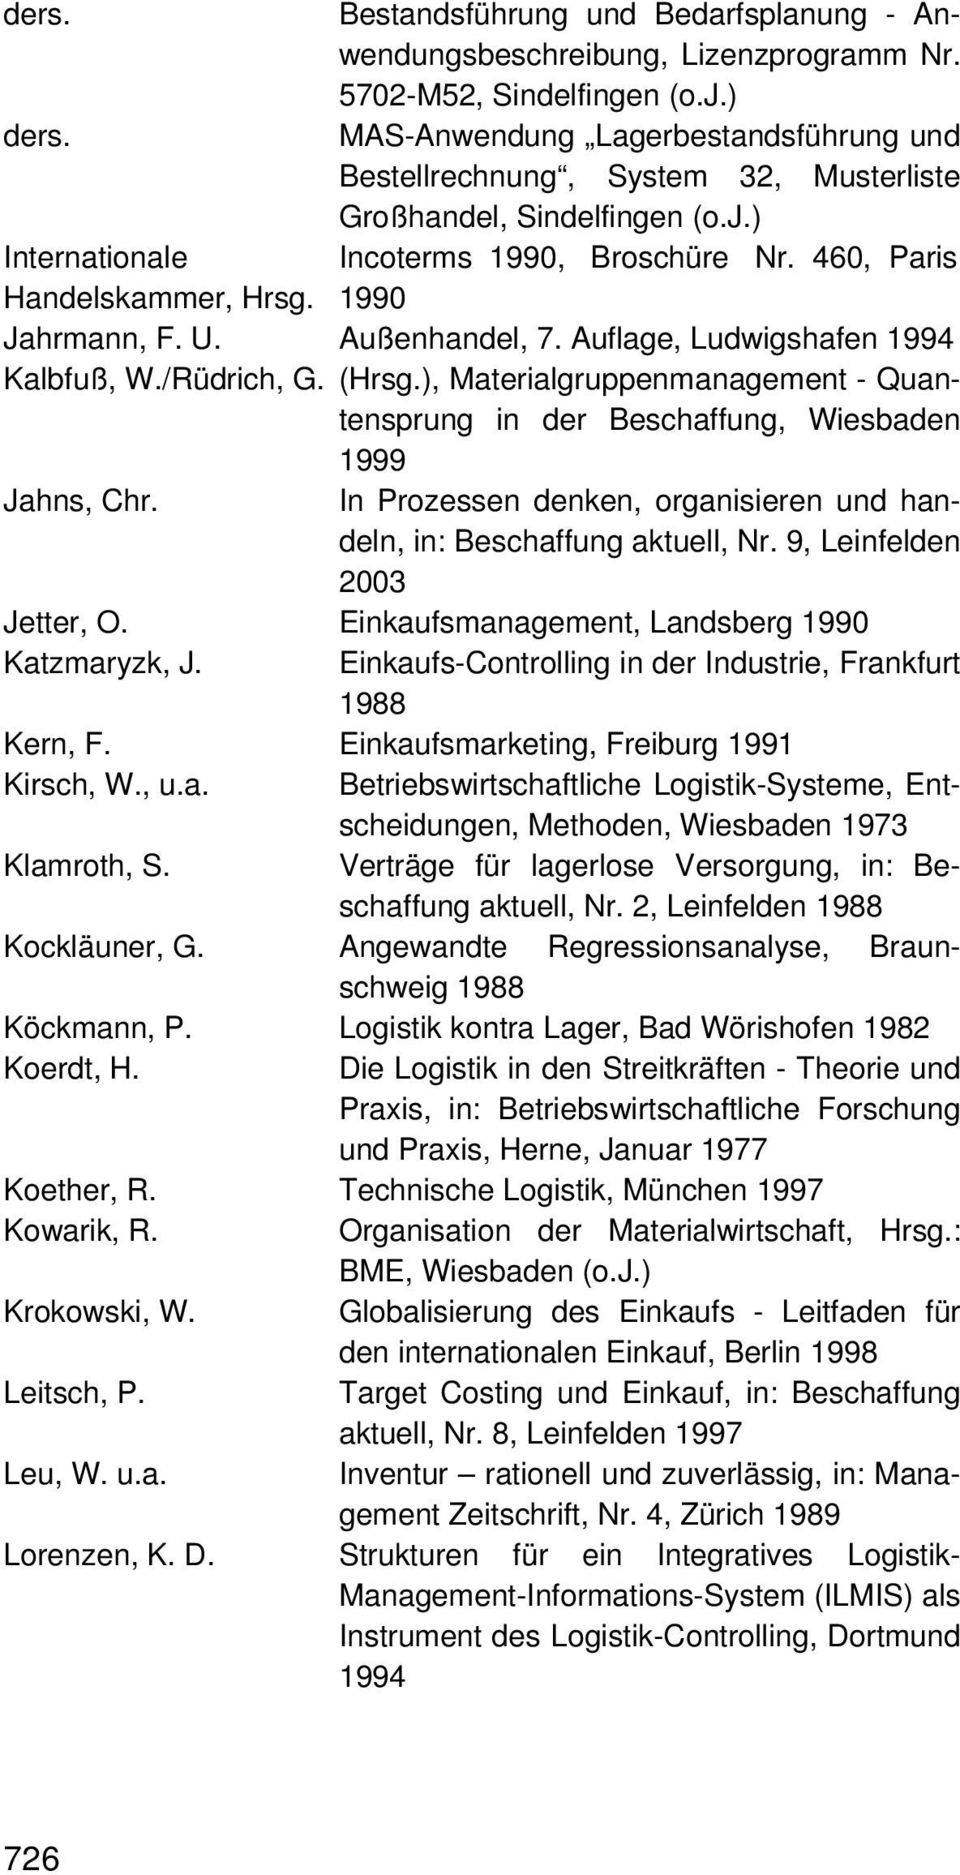 1990 Jahrmann, F. U. Außenhandel, 7. Auflage, Ludwigshafen 1994 Kalbfuß, W./Rüdrich, G. (Hrsg.), Materialgruppenmanagement - Quantensprung in der Beschaffung, Wiesbaden 1999 Jahns, Chr.